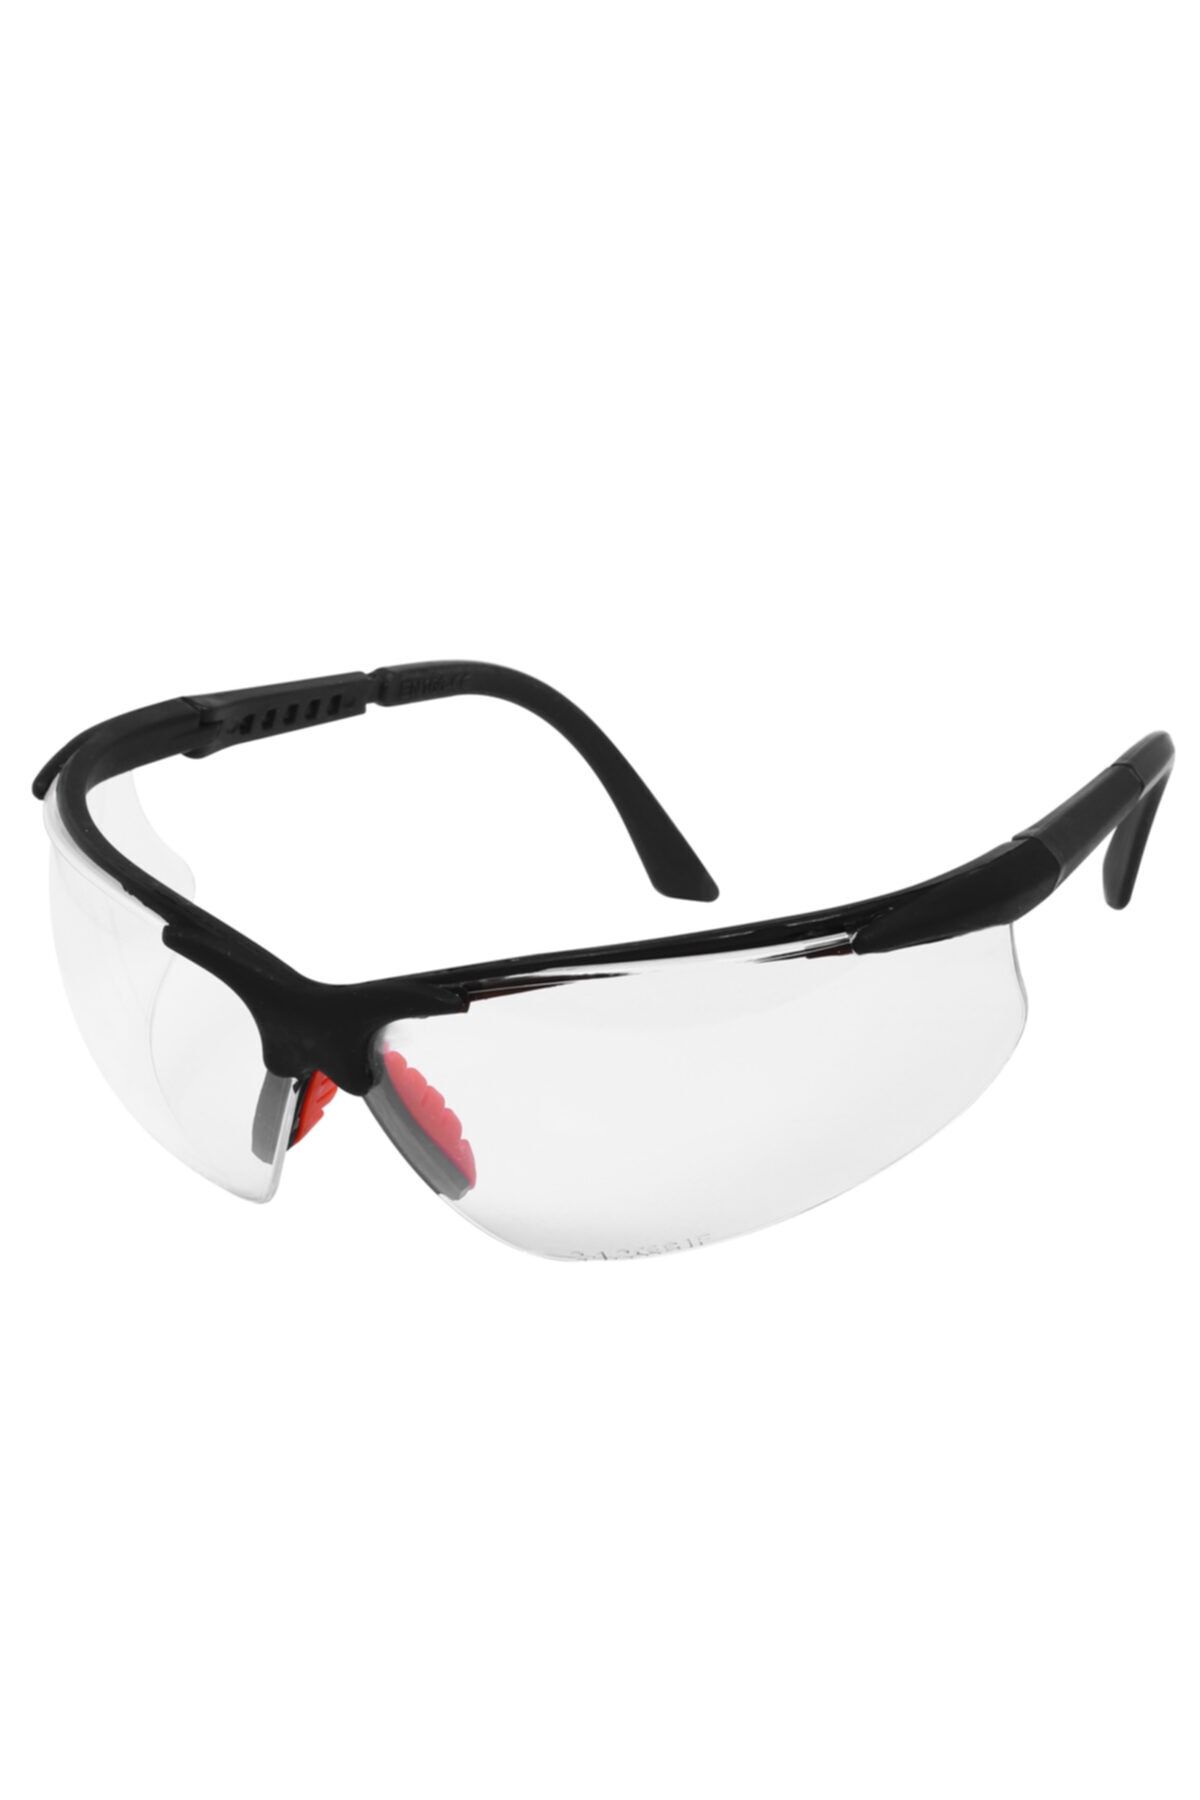 Badem10 Bisiklet Güneş Gözlüğü Koruyucu Silikonlu Bisikletçi Gözlük S600 Şeffaf Ürünleri